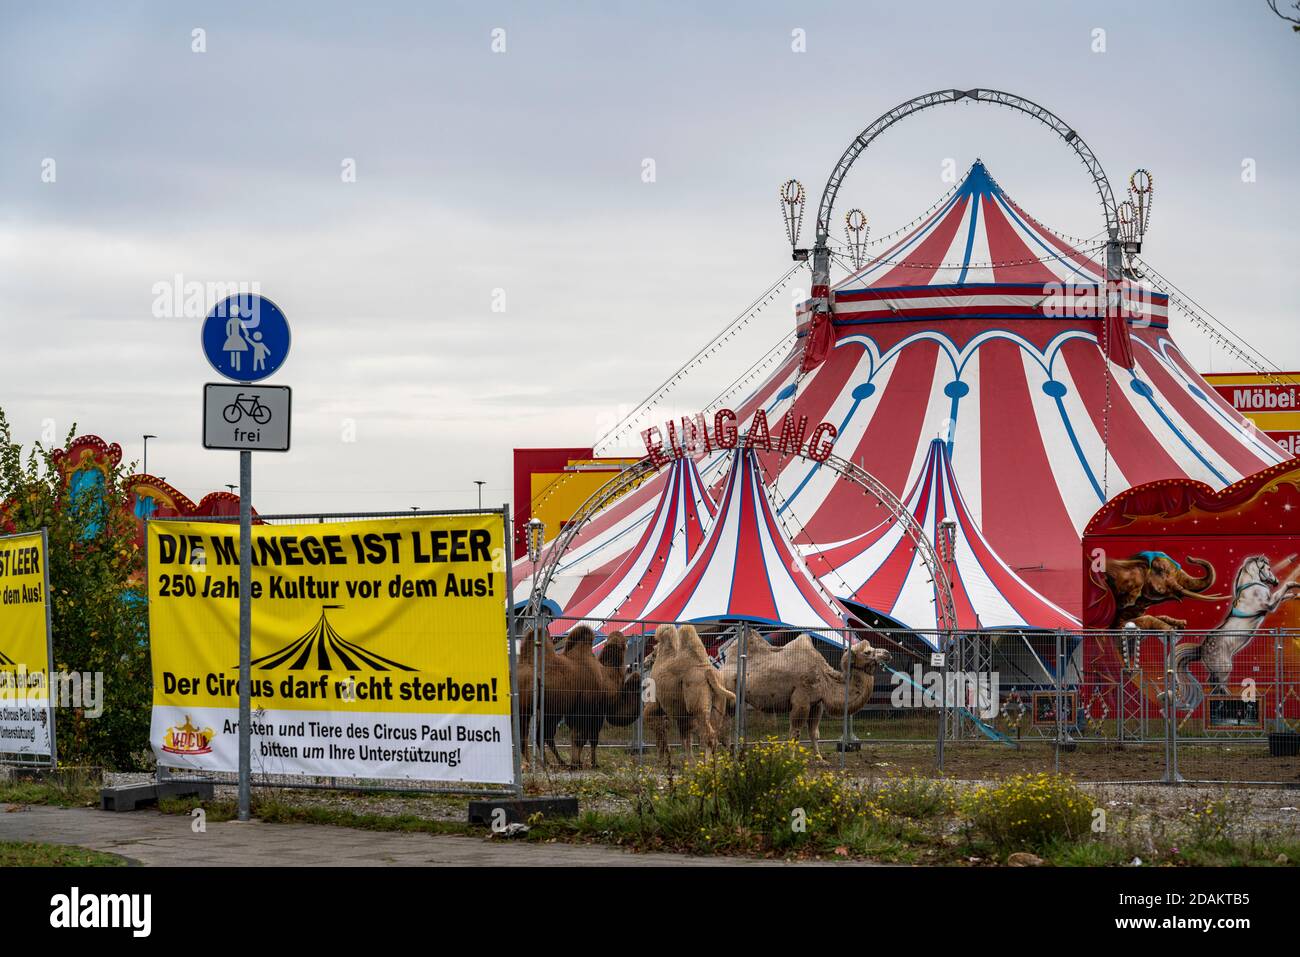 Il Circo Paul Busch, chiuso durante la seconda Corona Lockdown, a Oberhausen, richiama l'attenzione con i manifesti sulla difficile situazione del circo ope Foto Stock